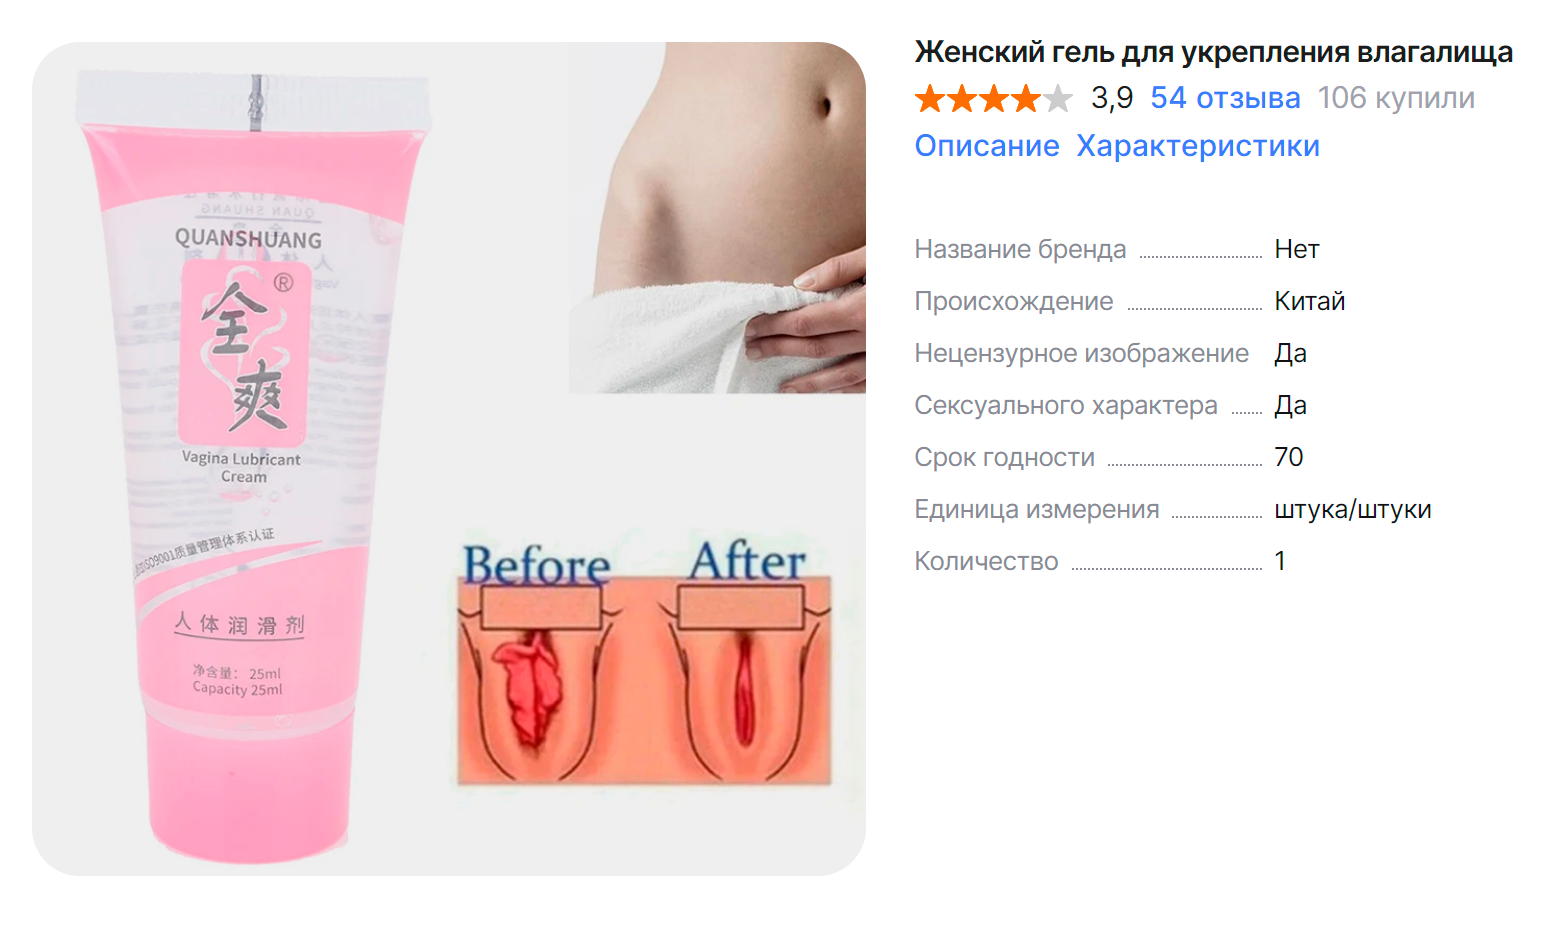 В интернете можно найти смазки, якобы изменяющие половые губы. Но так не бывает. Источник: aliexpress.ru